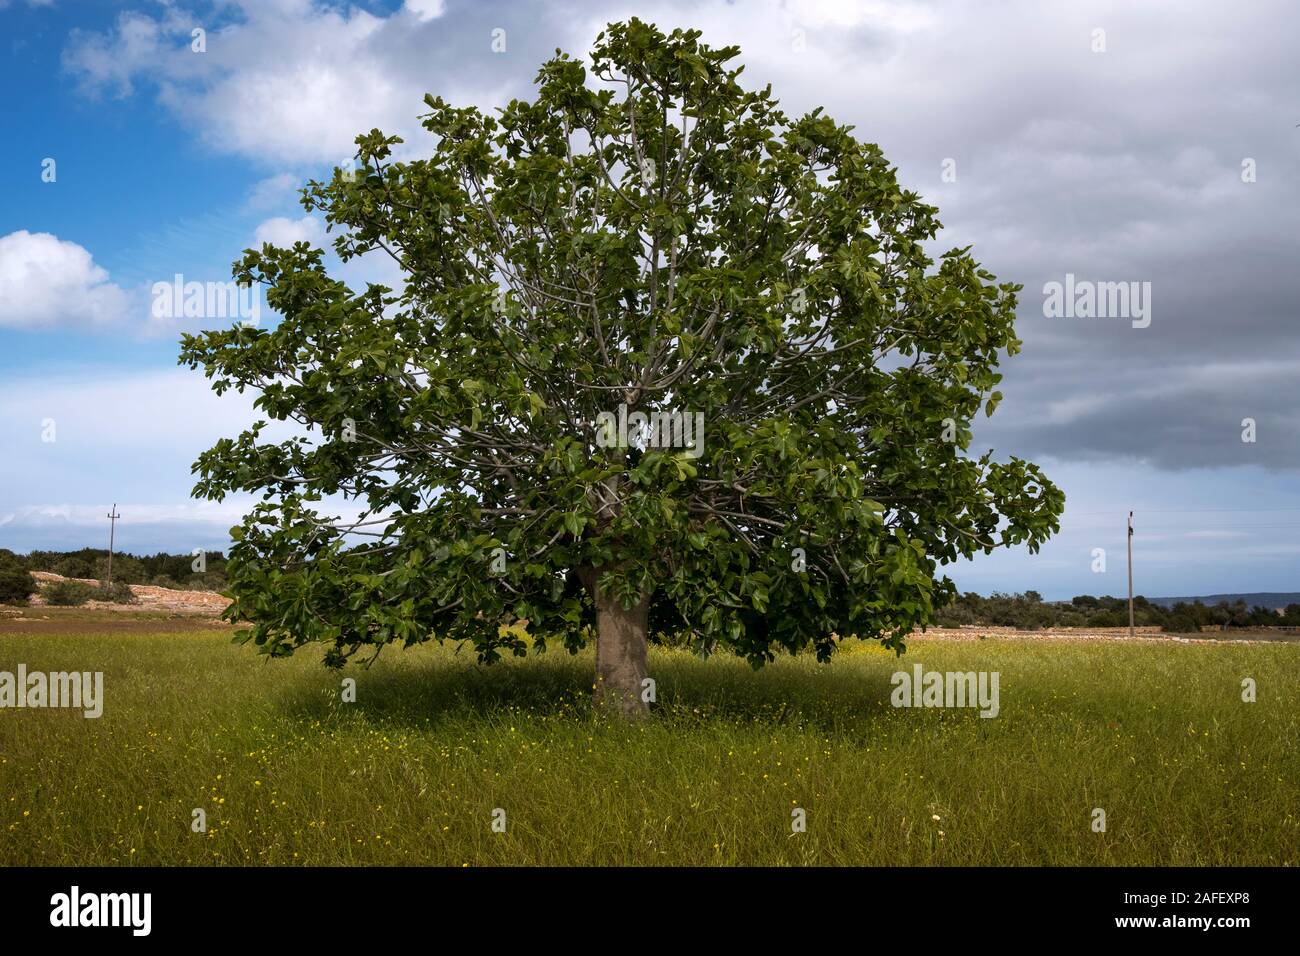 Un figuier (Ficus carica) dans un champ en pleine campagne Formentera au printemps (Pityusic, Îles Baléares, Espagne) Banque D'Images